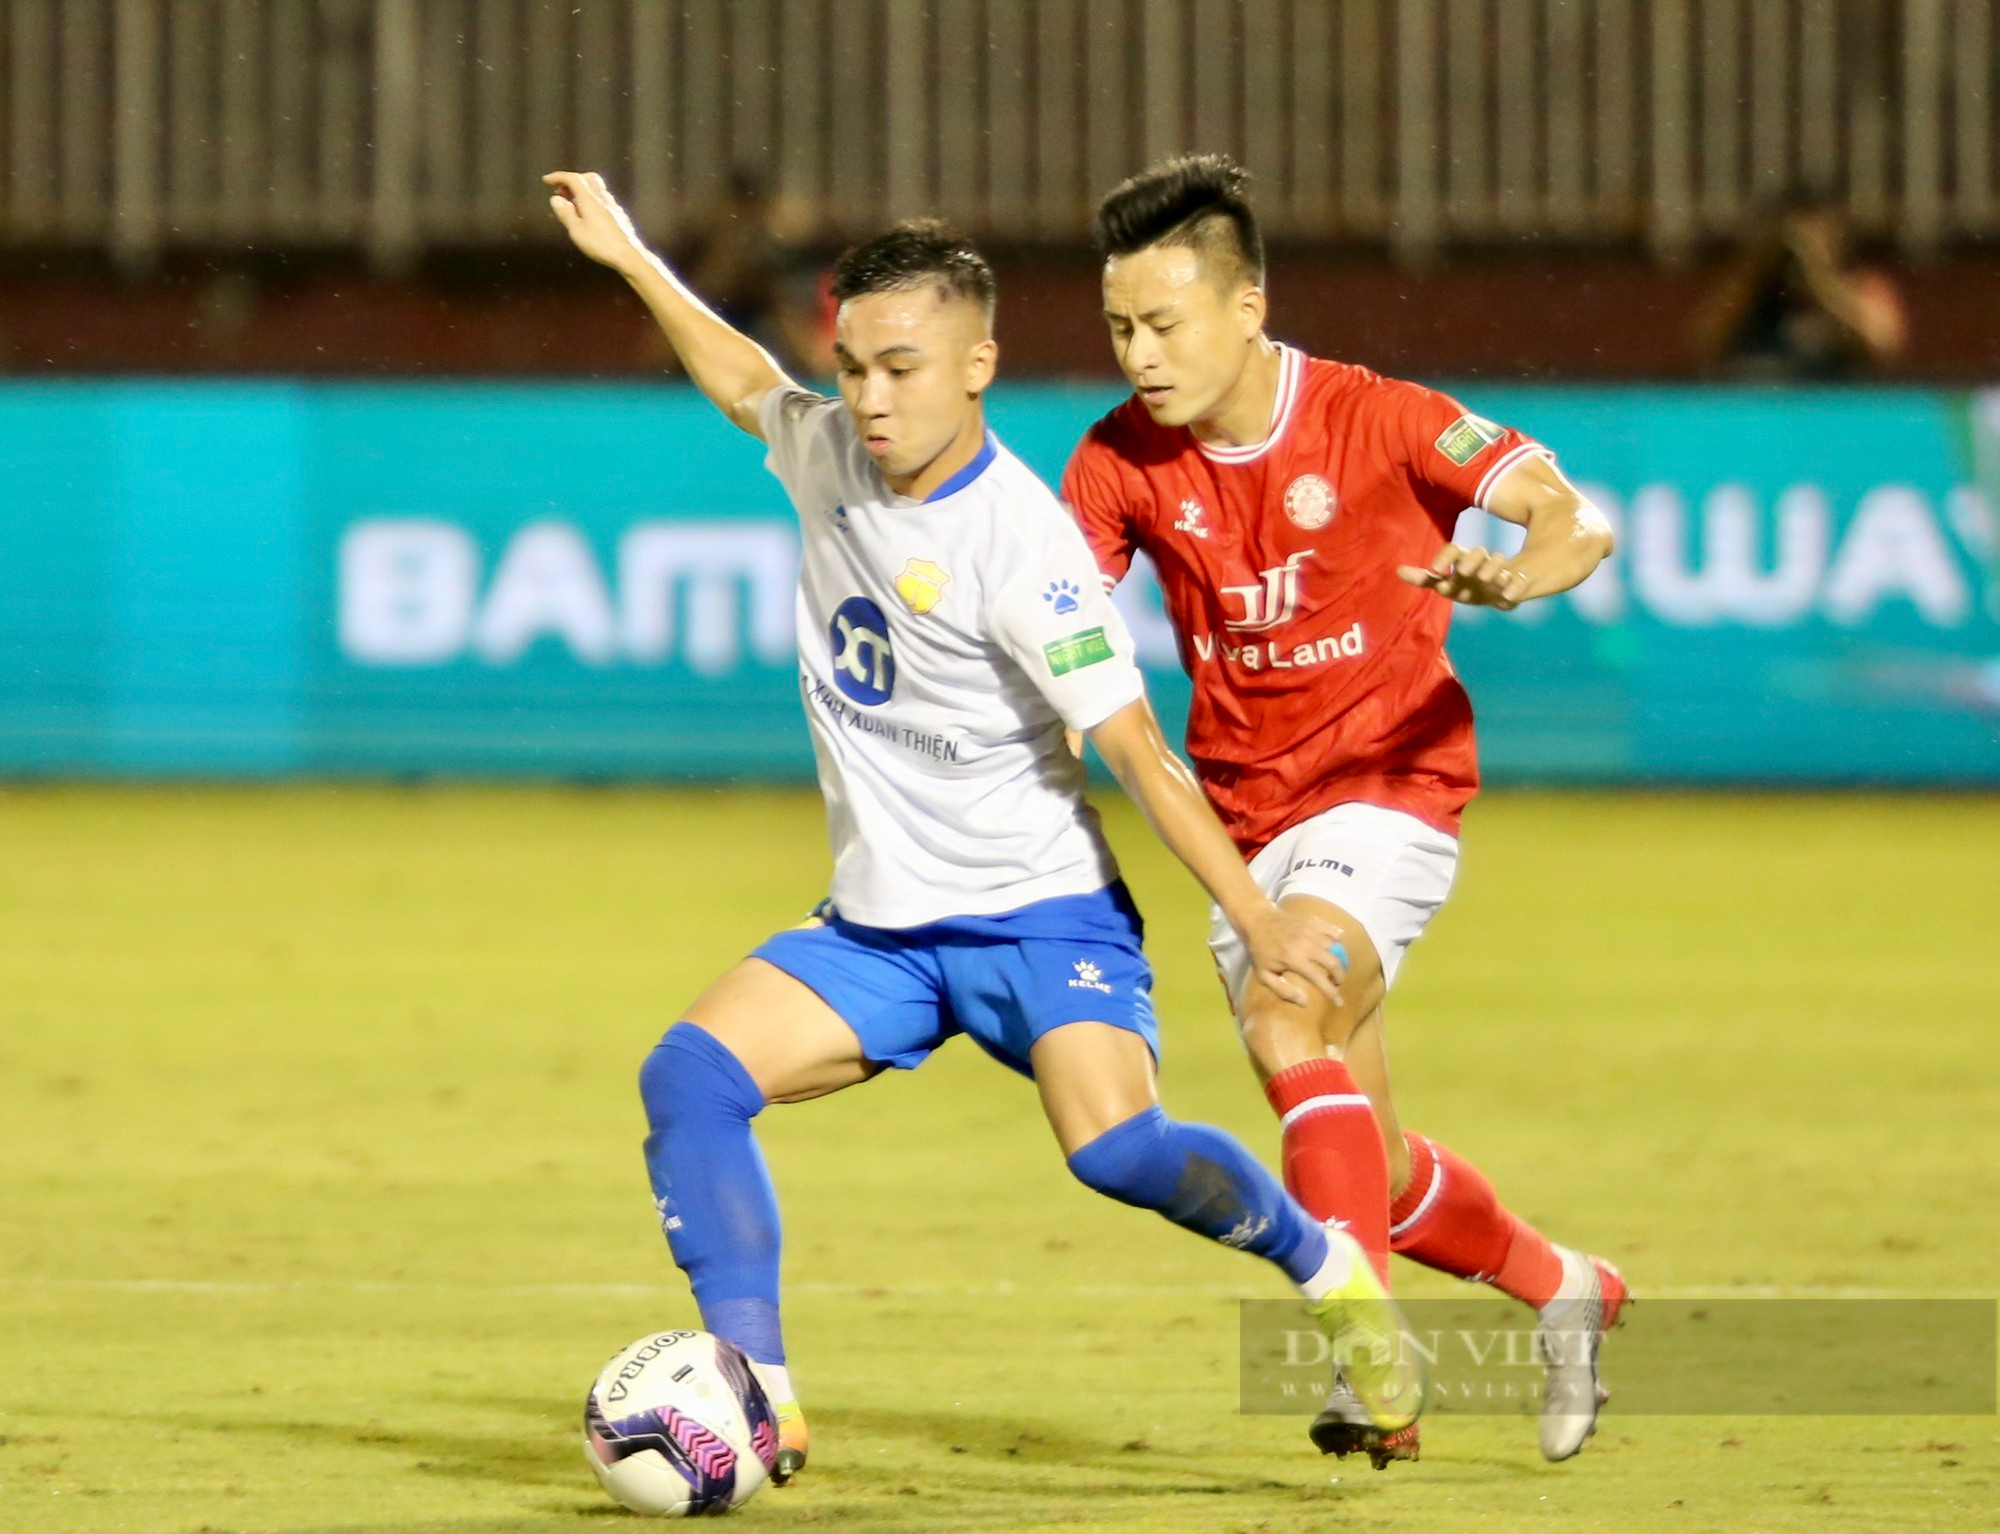 Lee Nguyễn bất lực, CLB TP.HCM bại trận trên sân nhà - Ảnh 2.